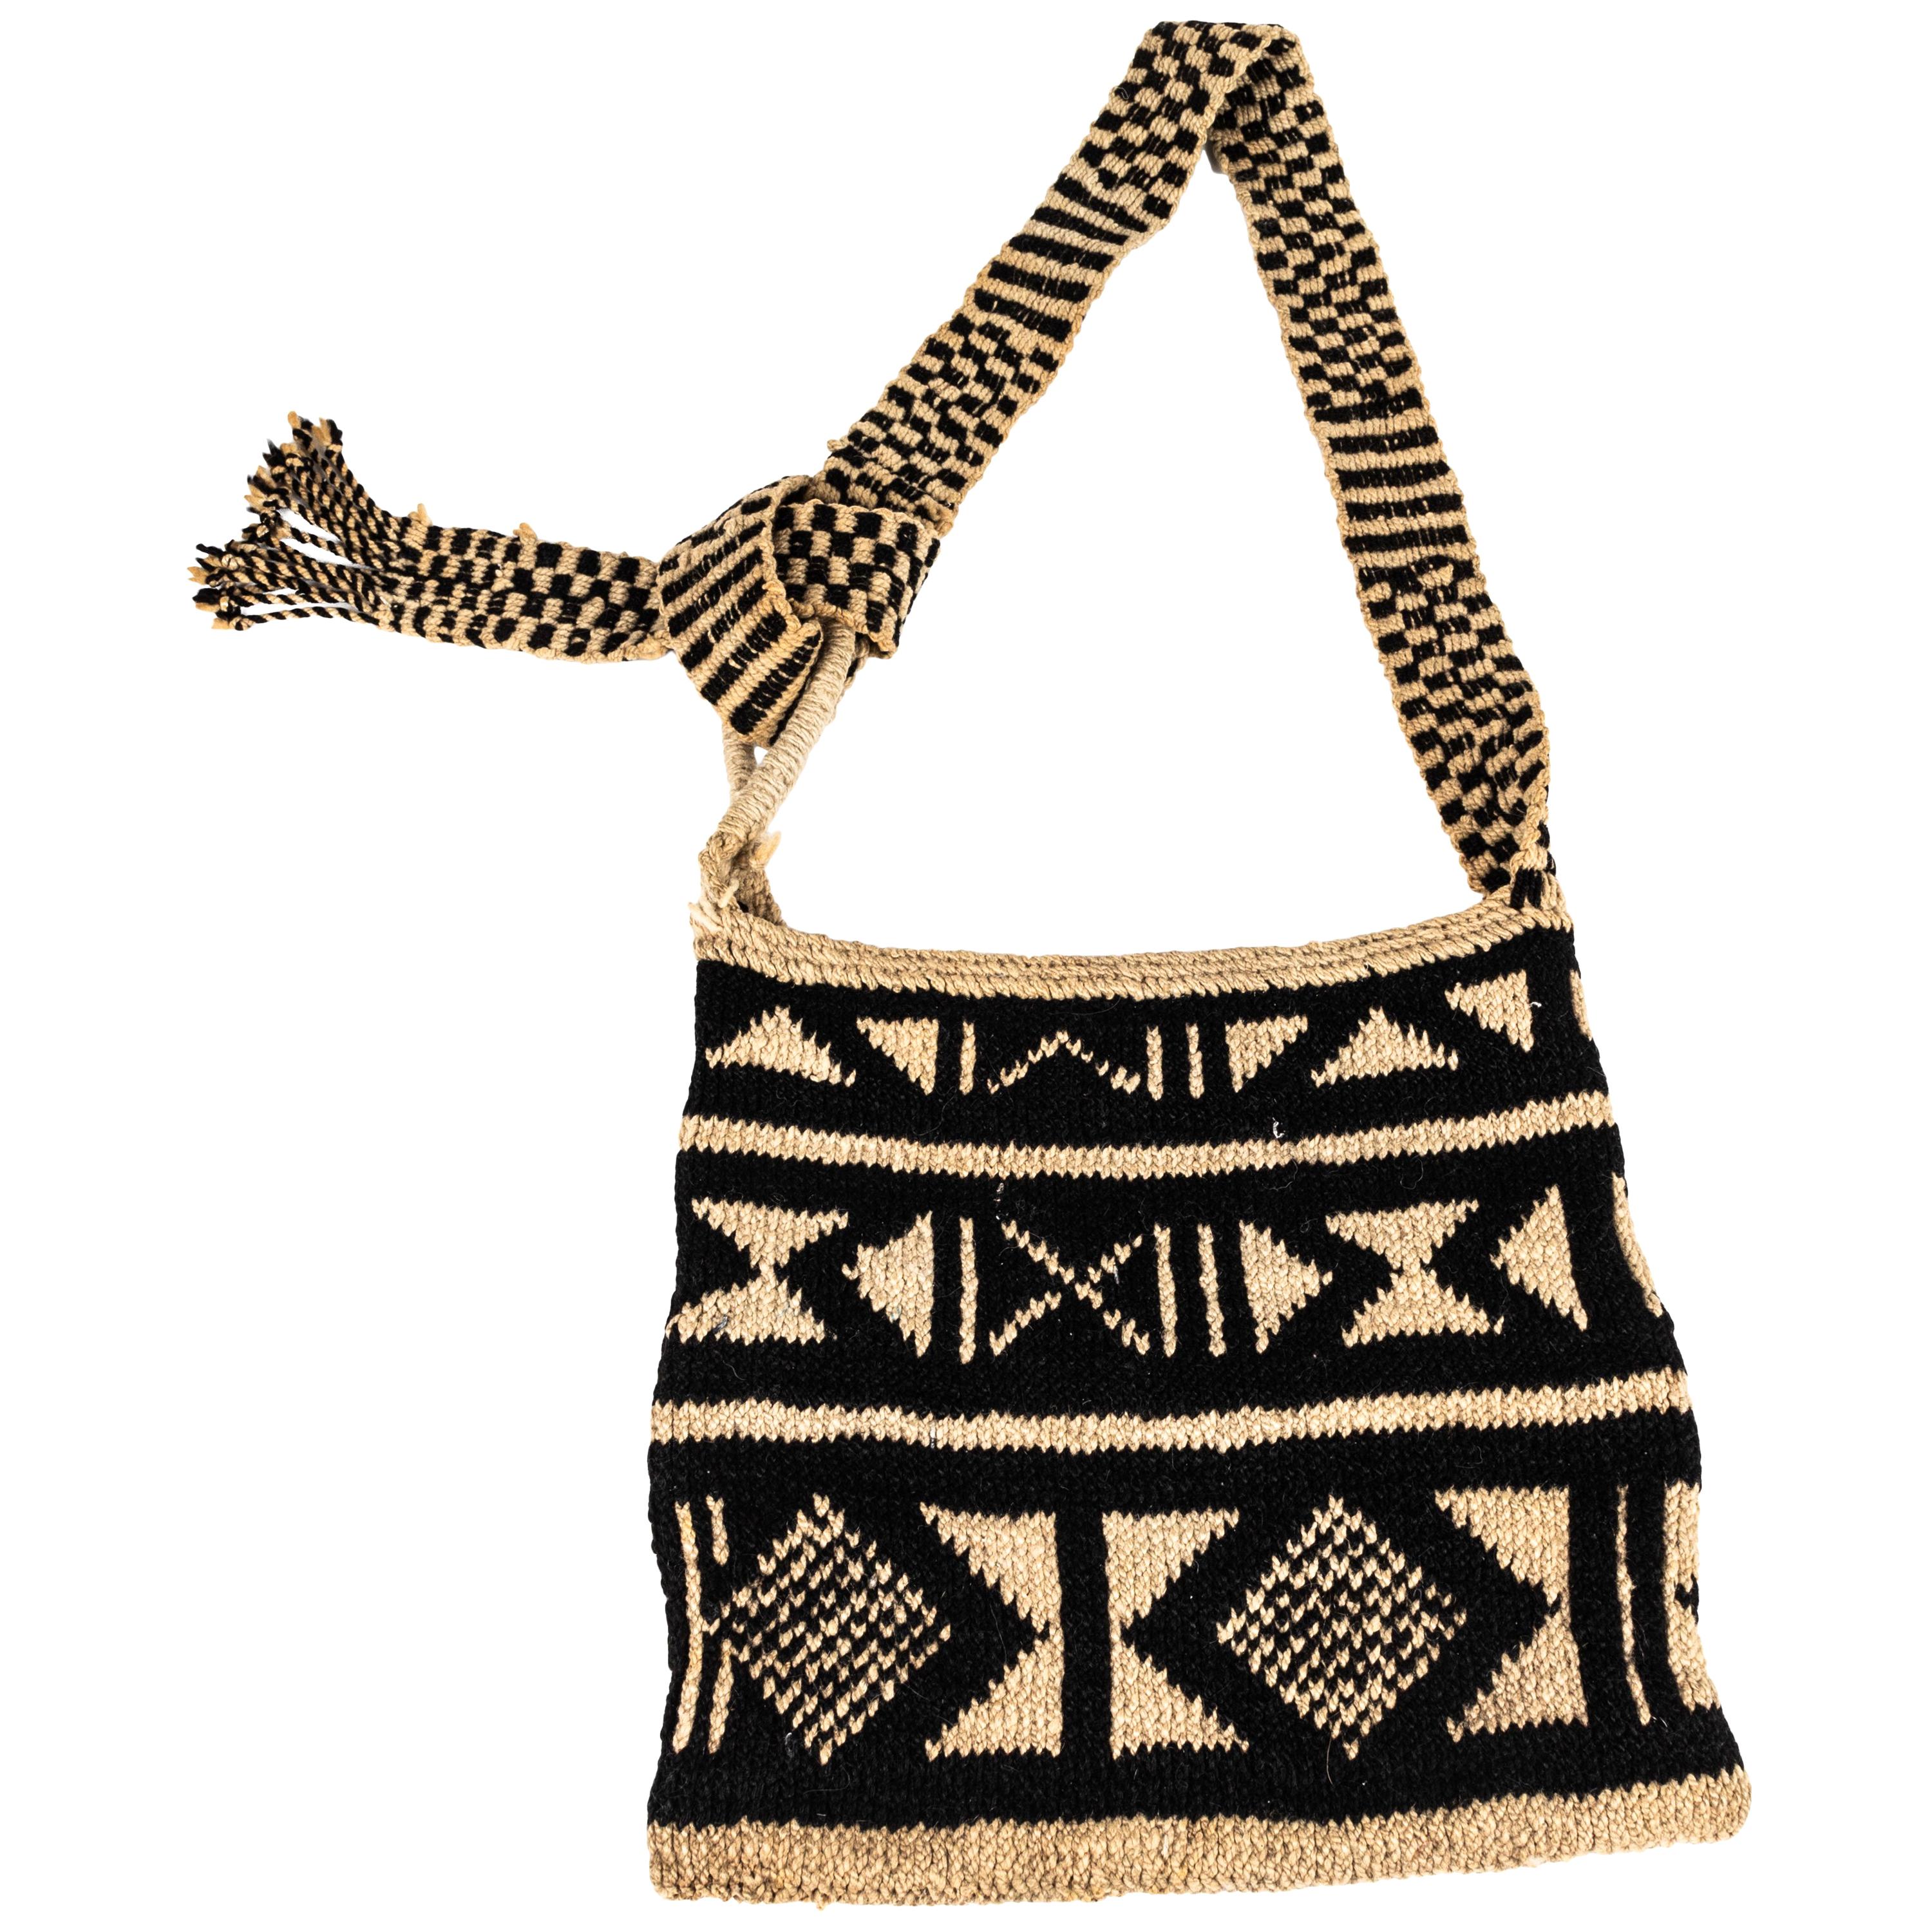 Contemporary Mexican Handwoven Decorative Bag